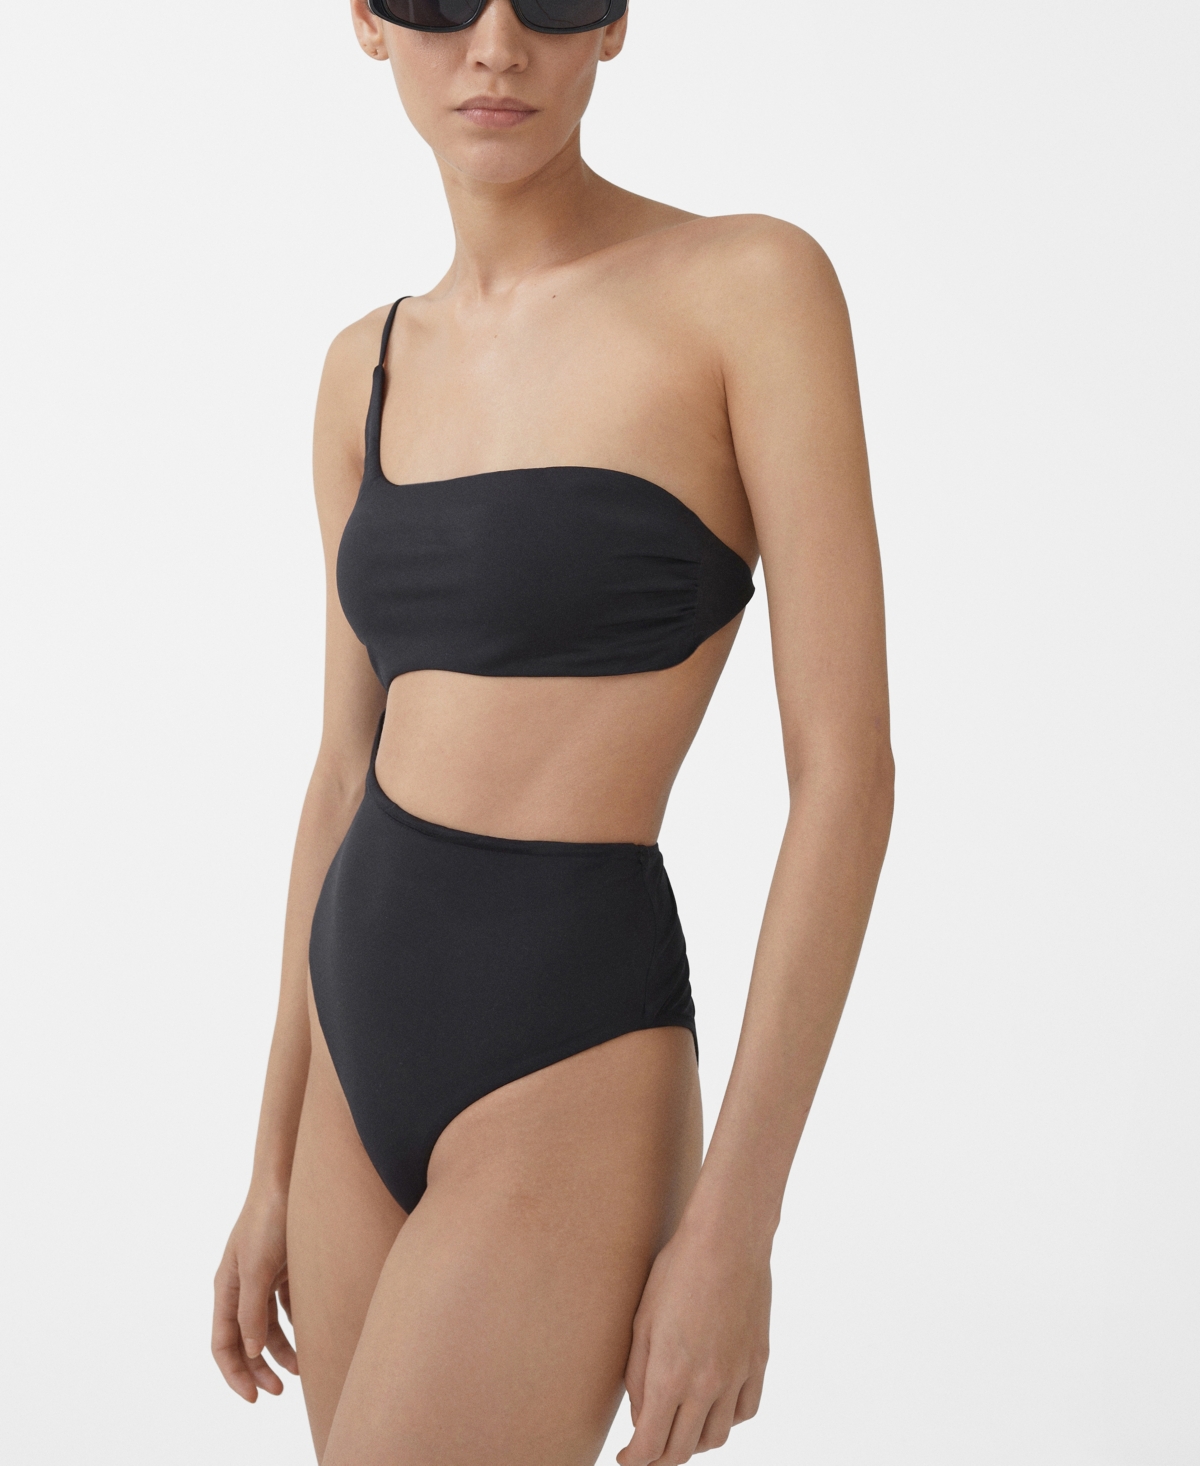 Women's Asymmetrical Opening Swimsuit - Black